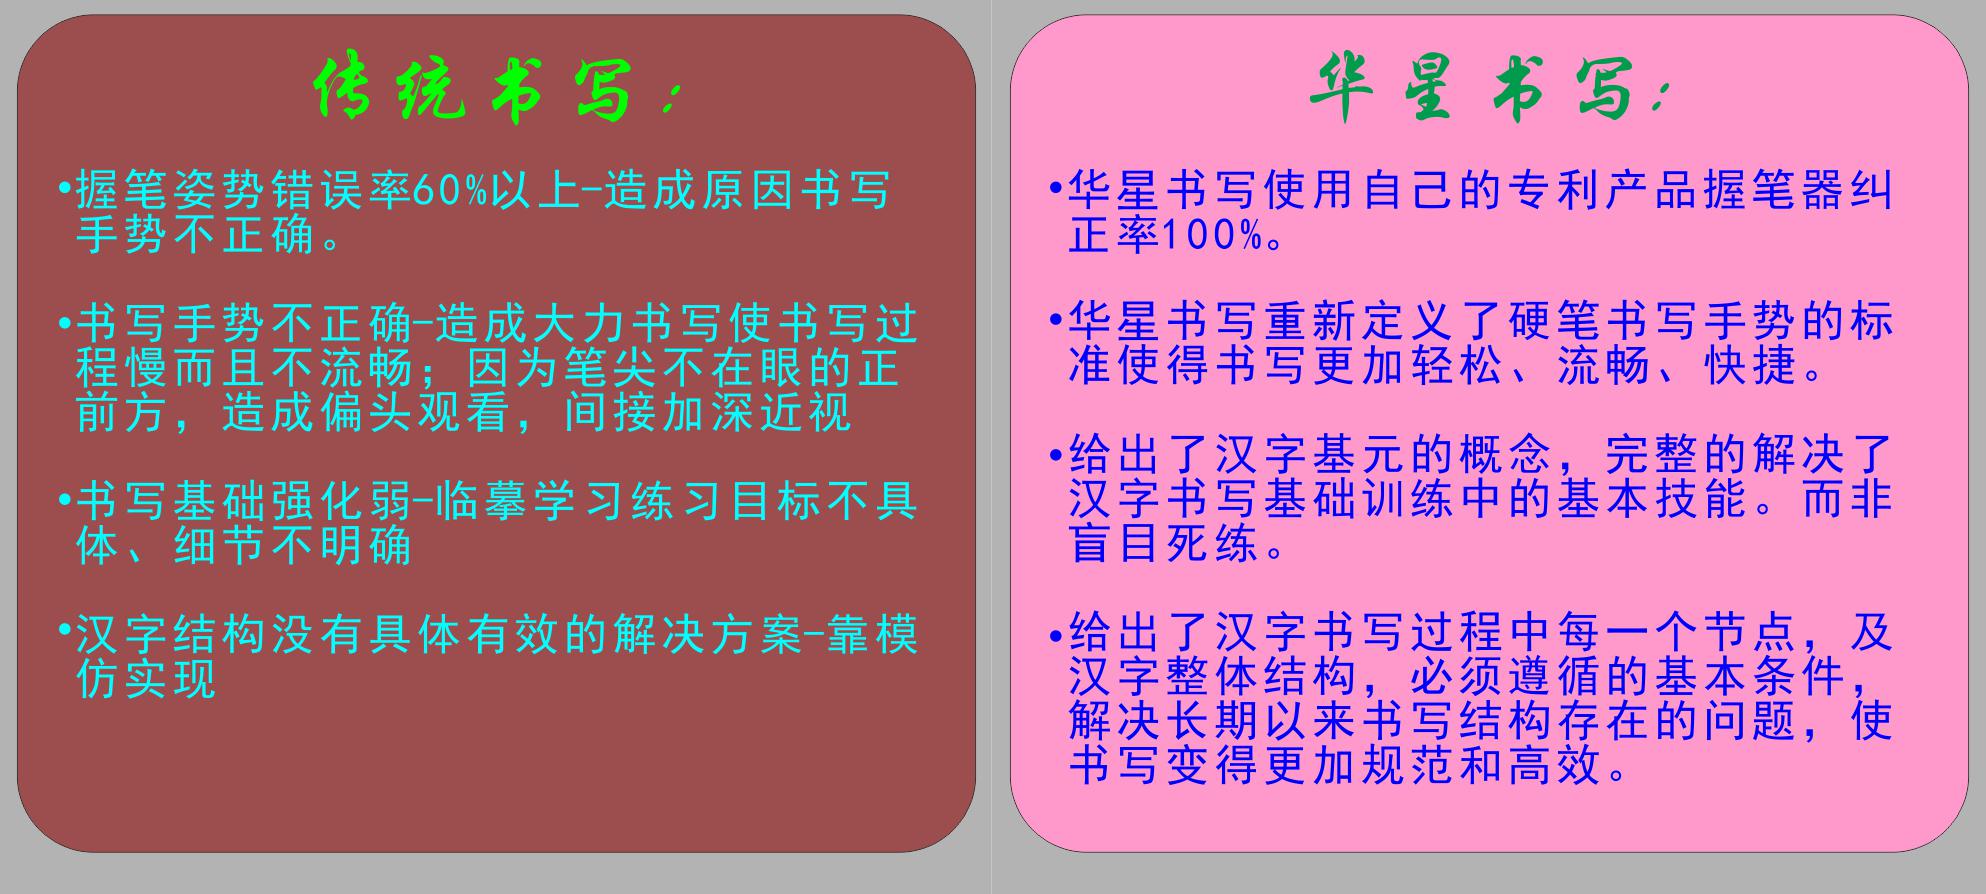  华星书写不教书法 只教人书写规范化汉字|培养规范化汉字书写基本技能原始图片2